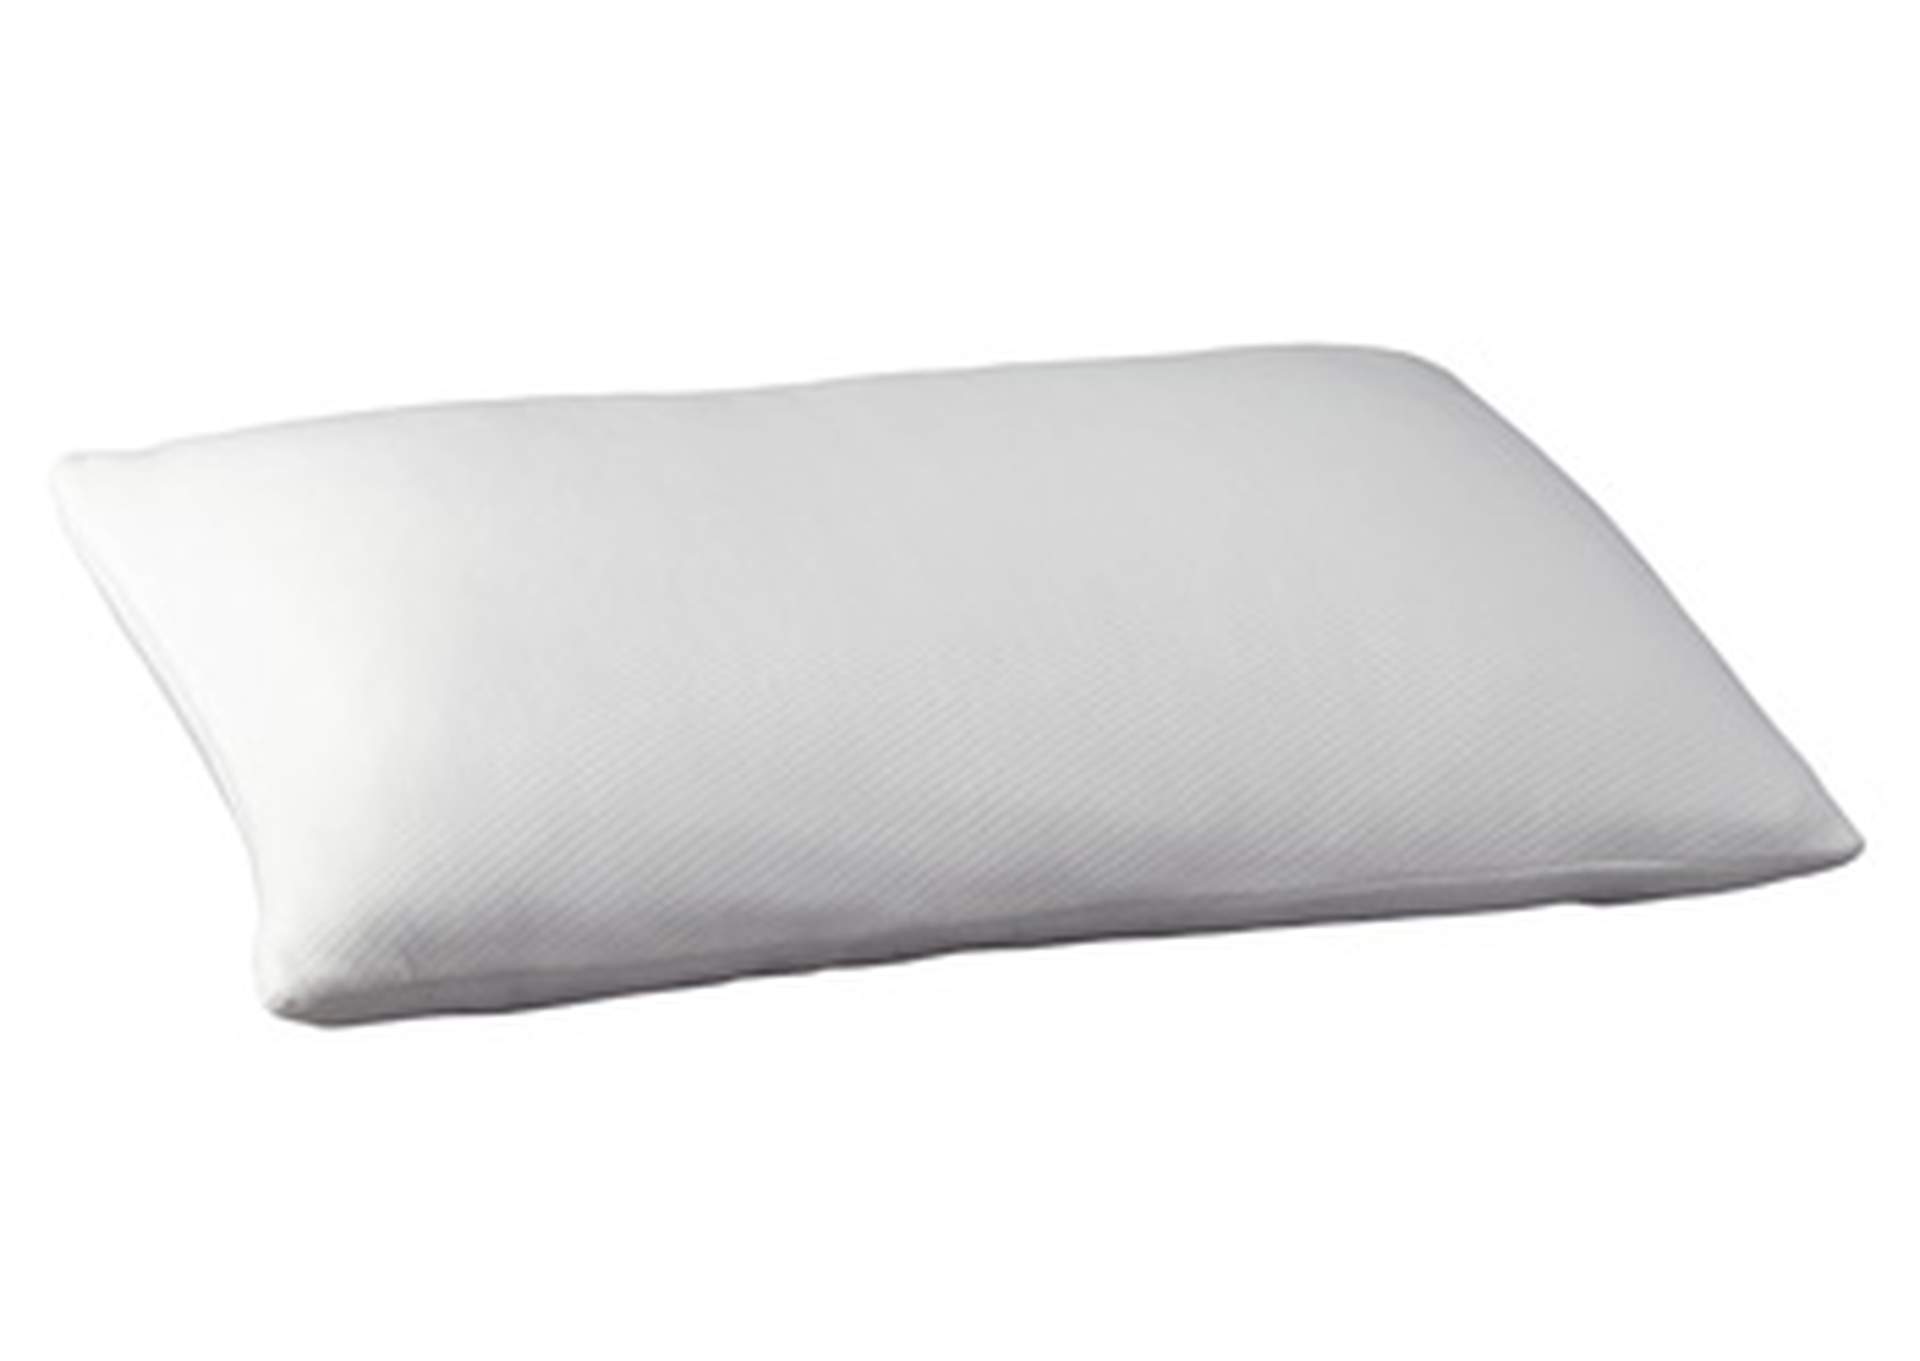 Promotional Memory Foam Pillow,Sierra Sleep by Ashley